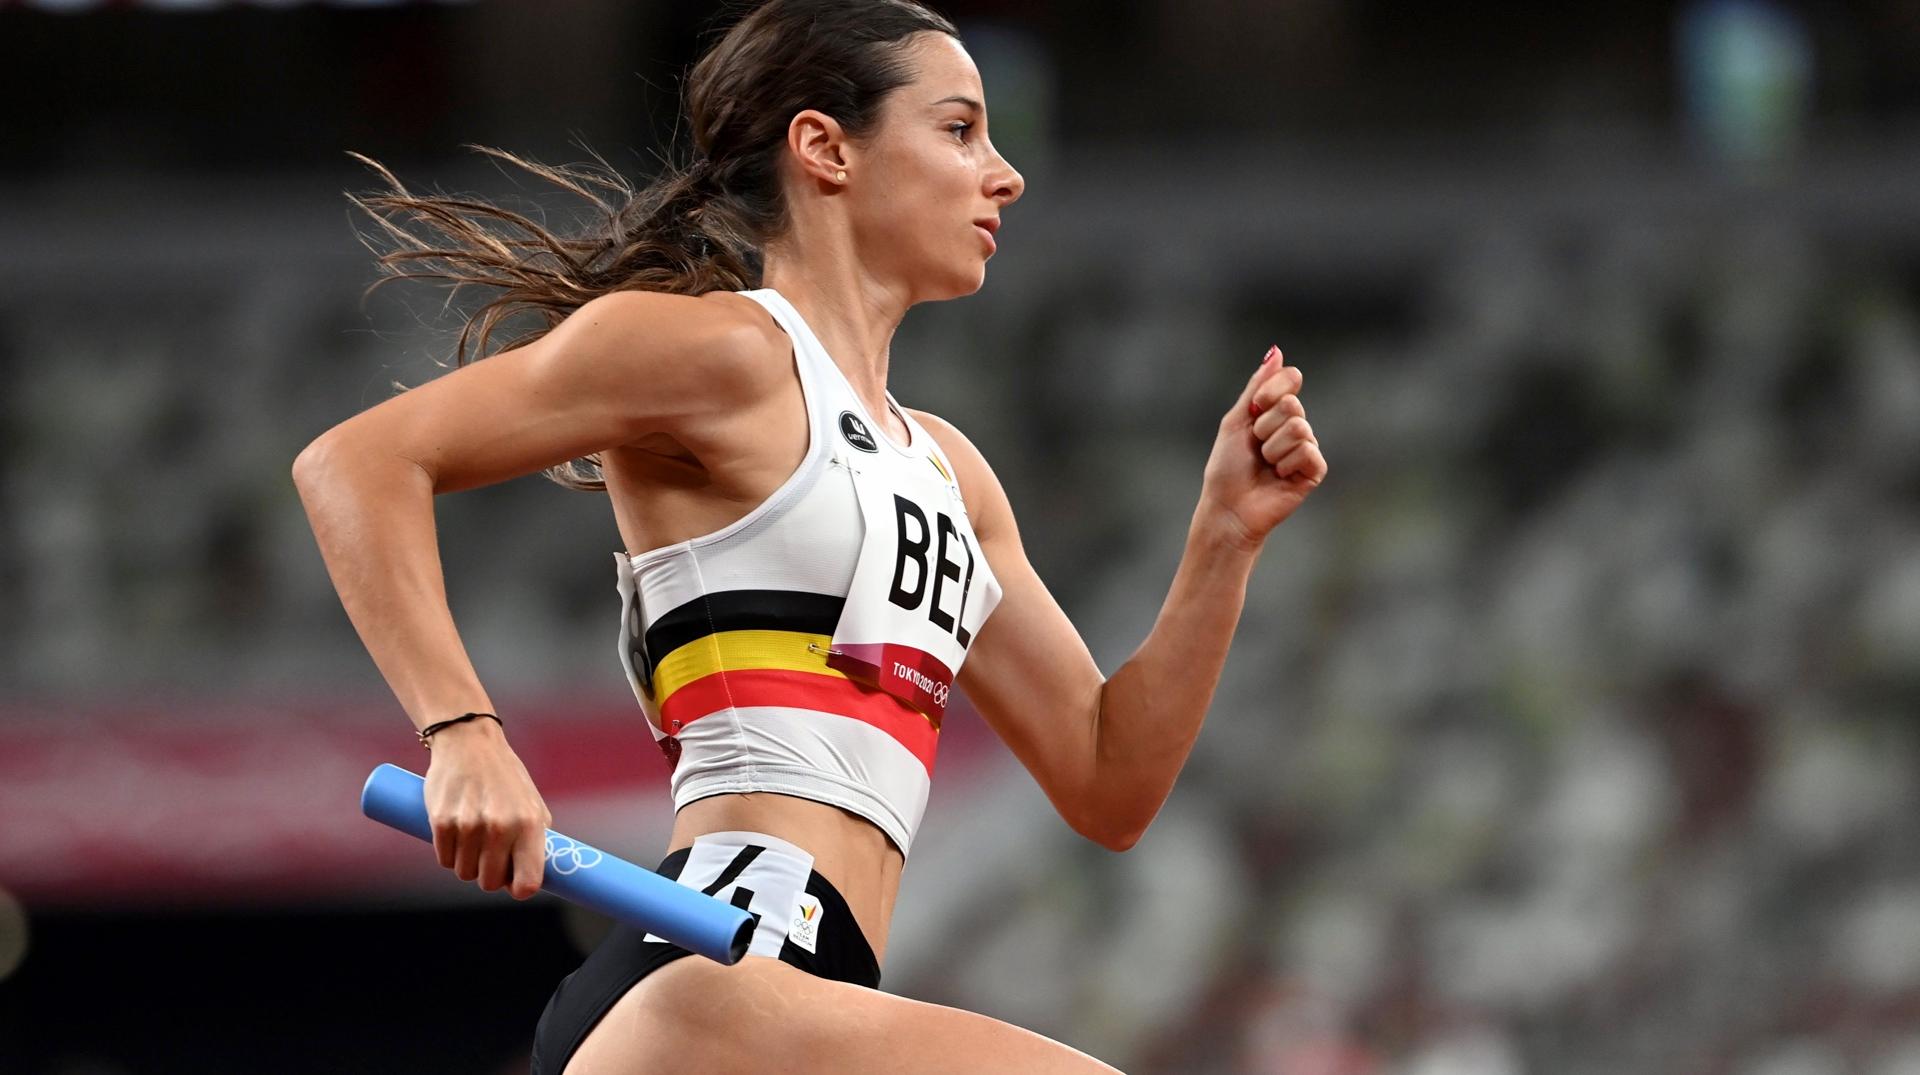 Athlétisme : Camille Laus s'est qualifiée pour les JO avec le relais mixte belge